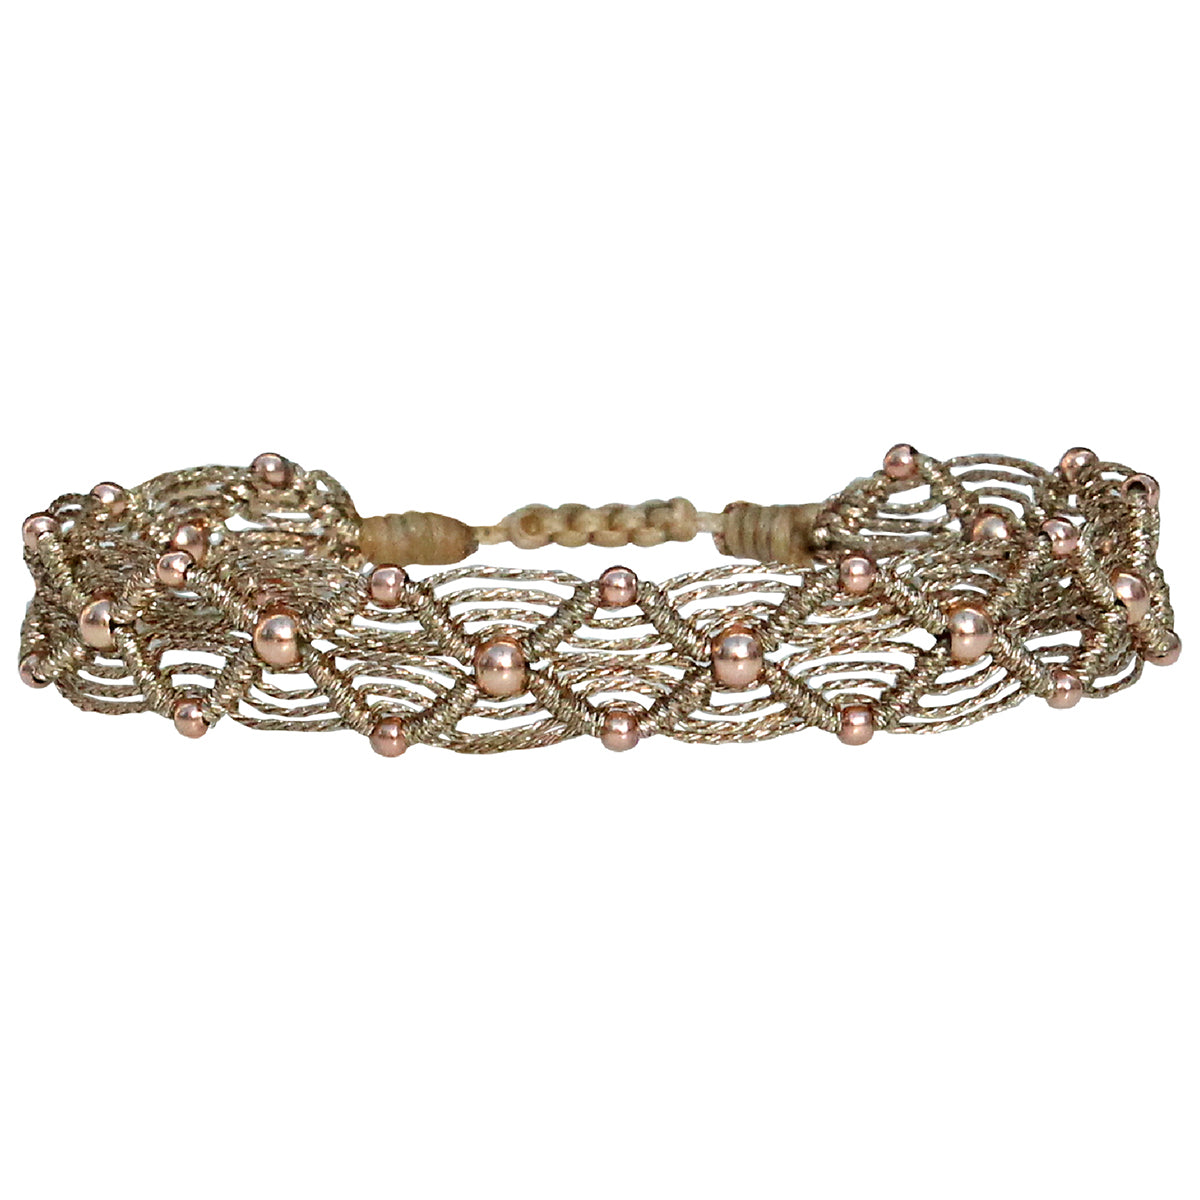 Handmade Bracelet in rose gold tones